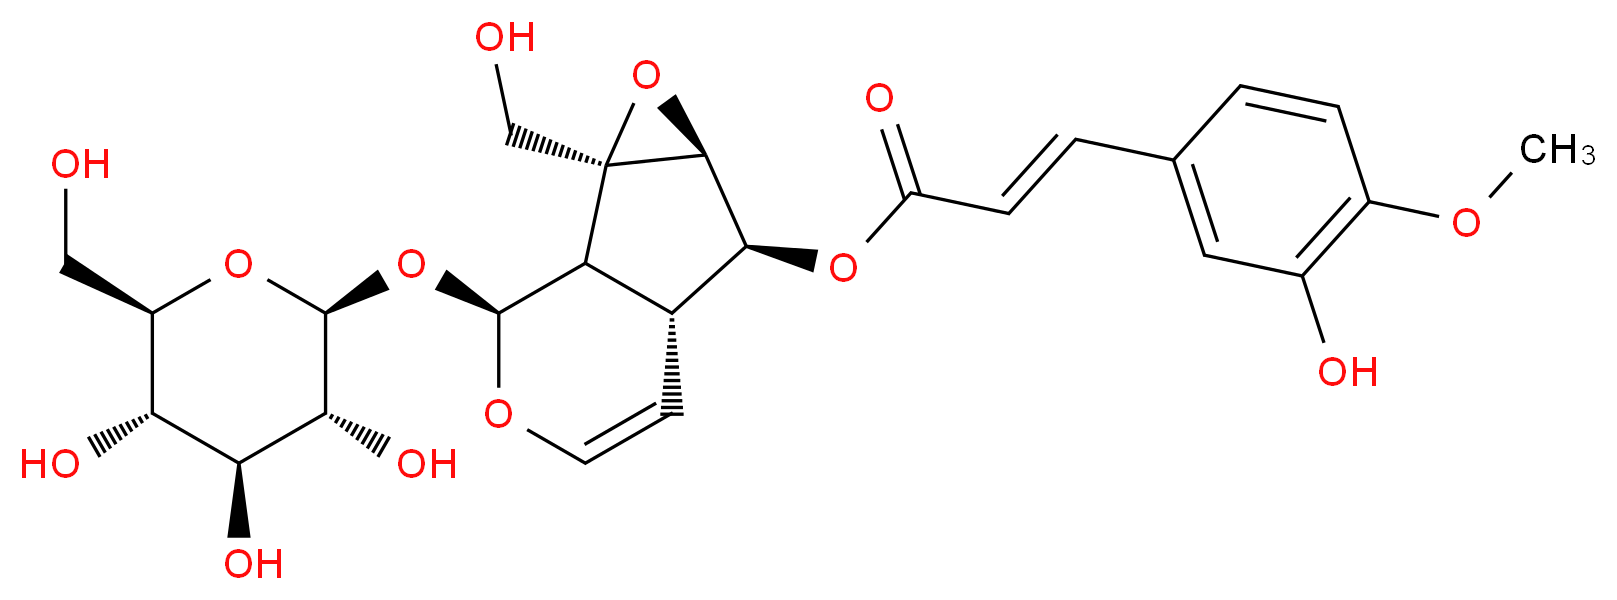 51005-44-8 molecular structure